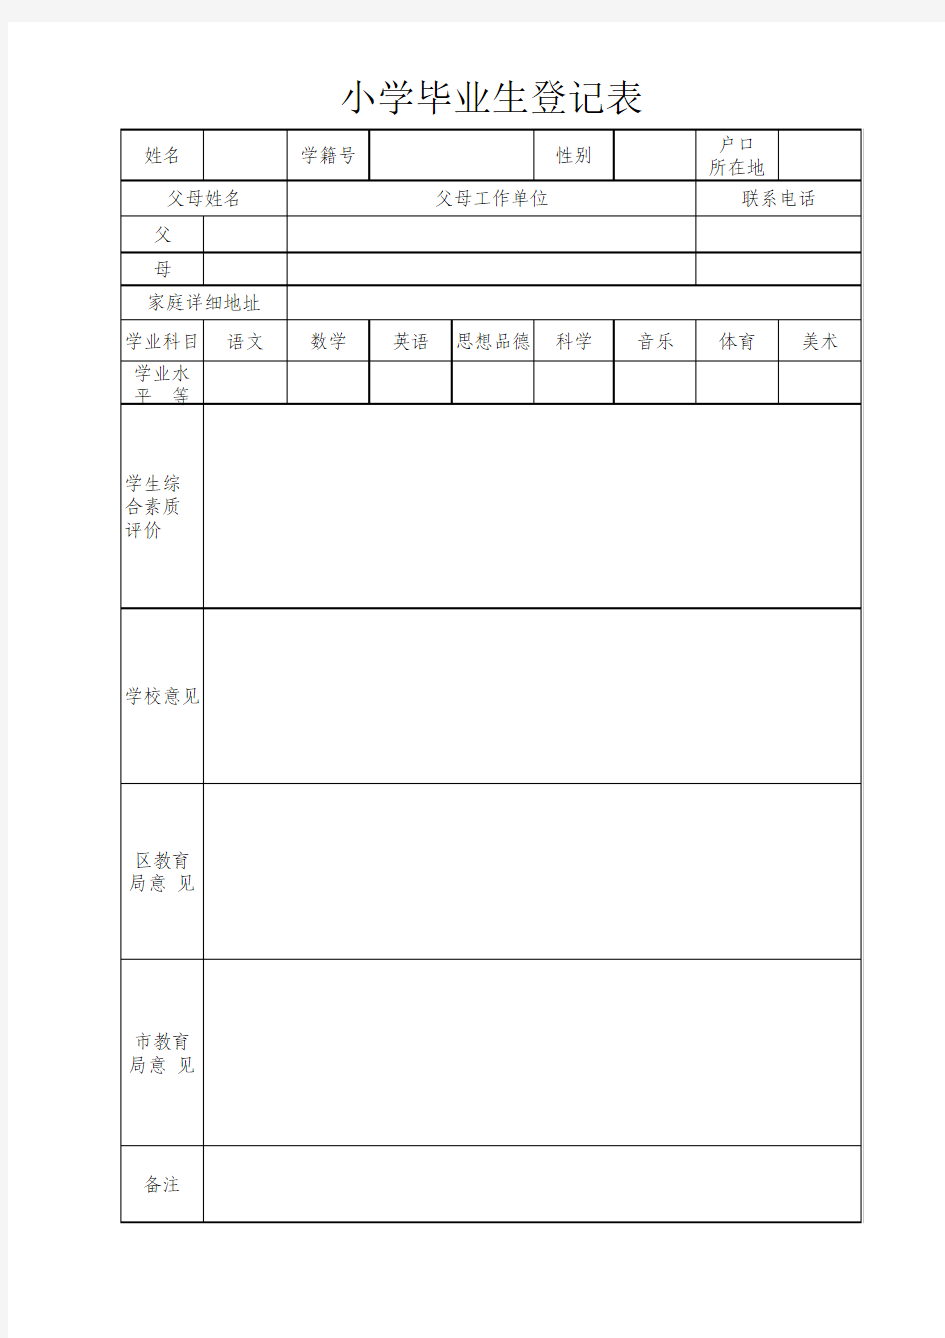 小学毕业生登记表(样表) (1)